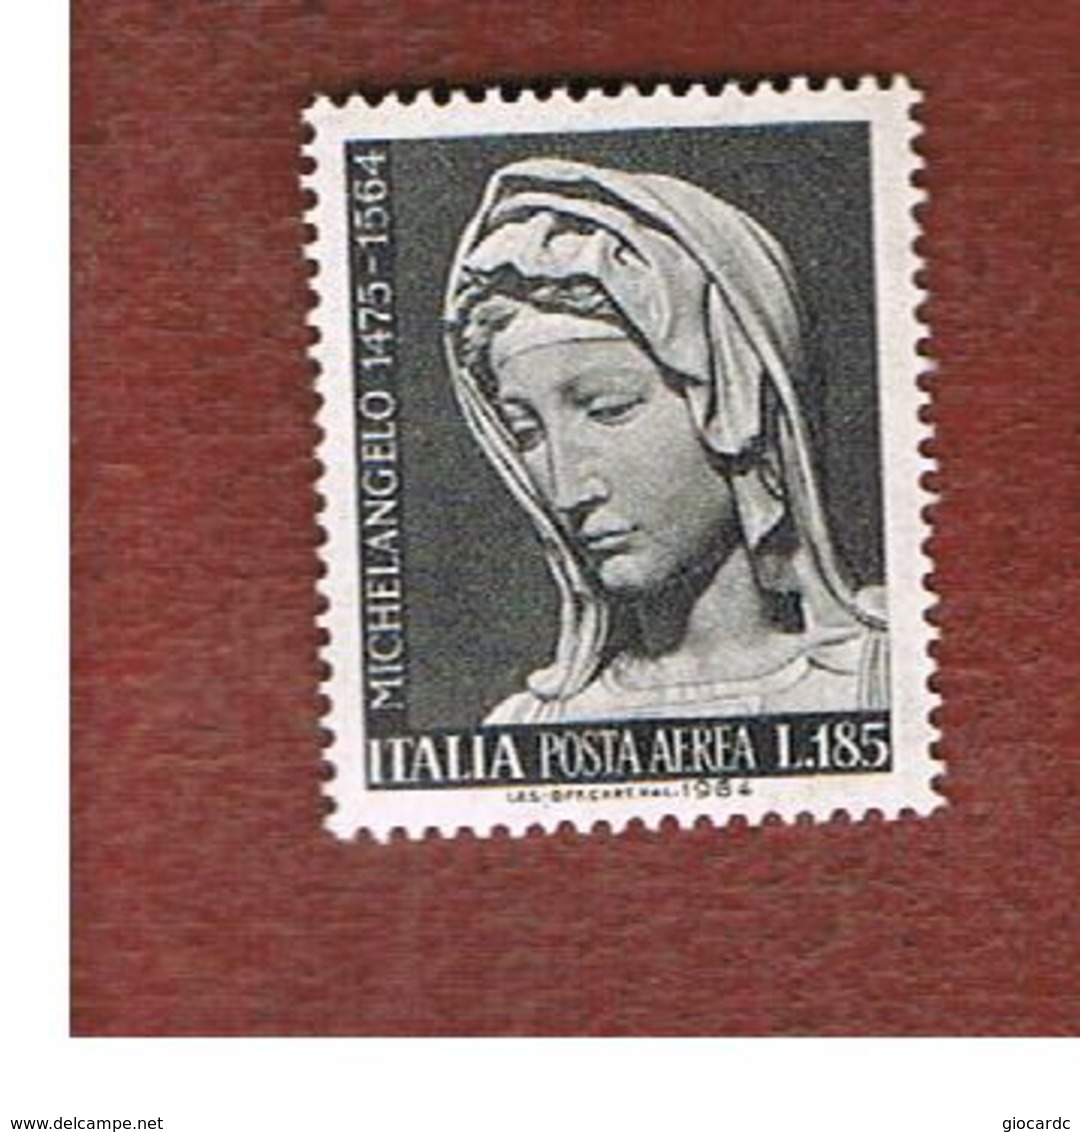 ITALIA  - UN. A156 - 1964 POSTA AEREA:  MICHELANGELO  - NUOVI ** (MINT) - Airmail